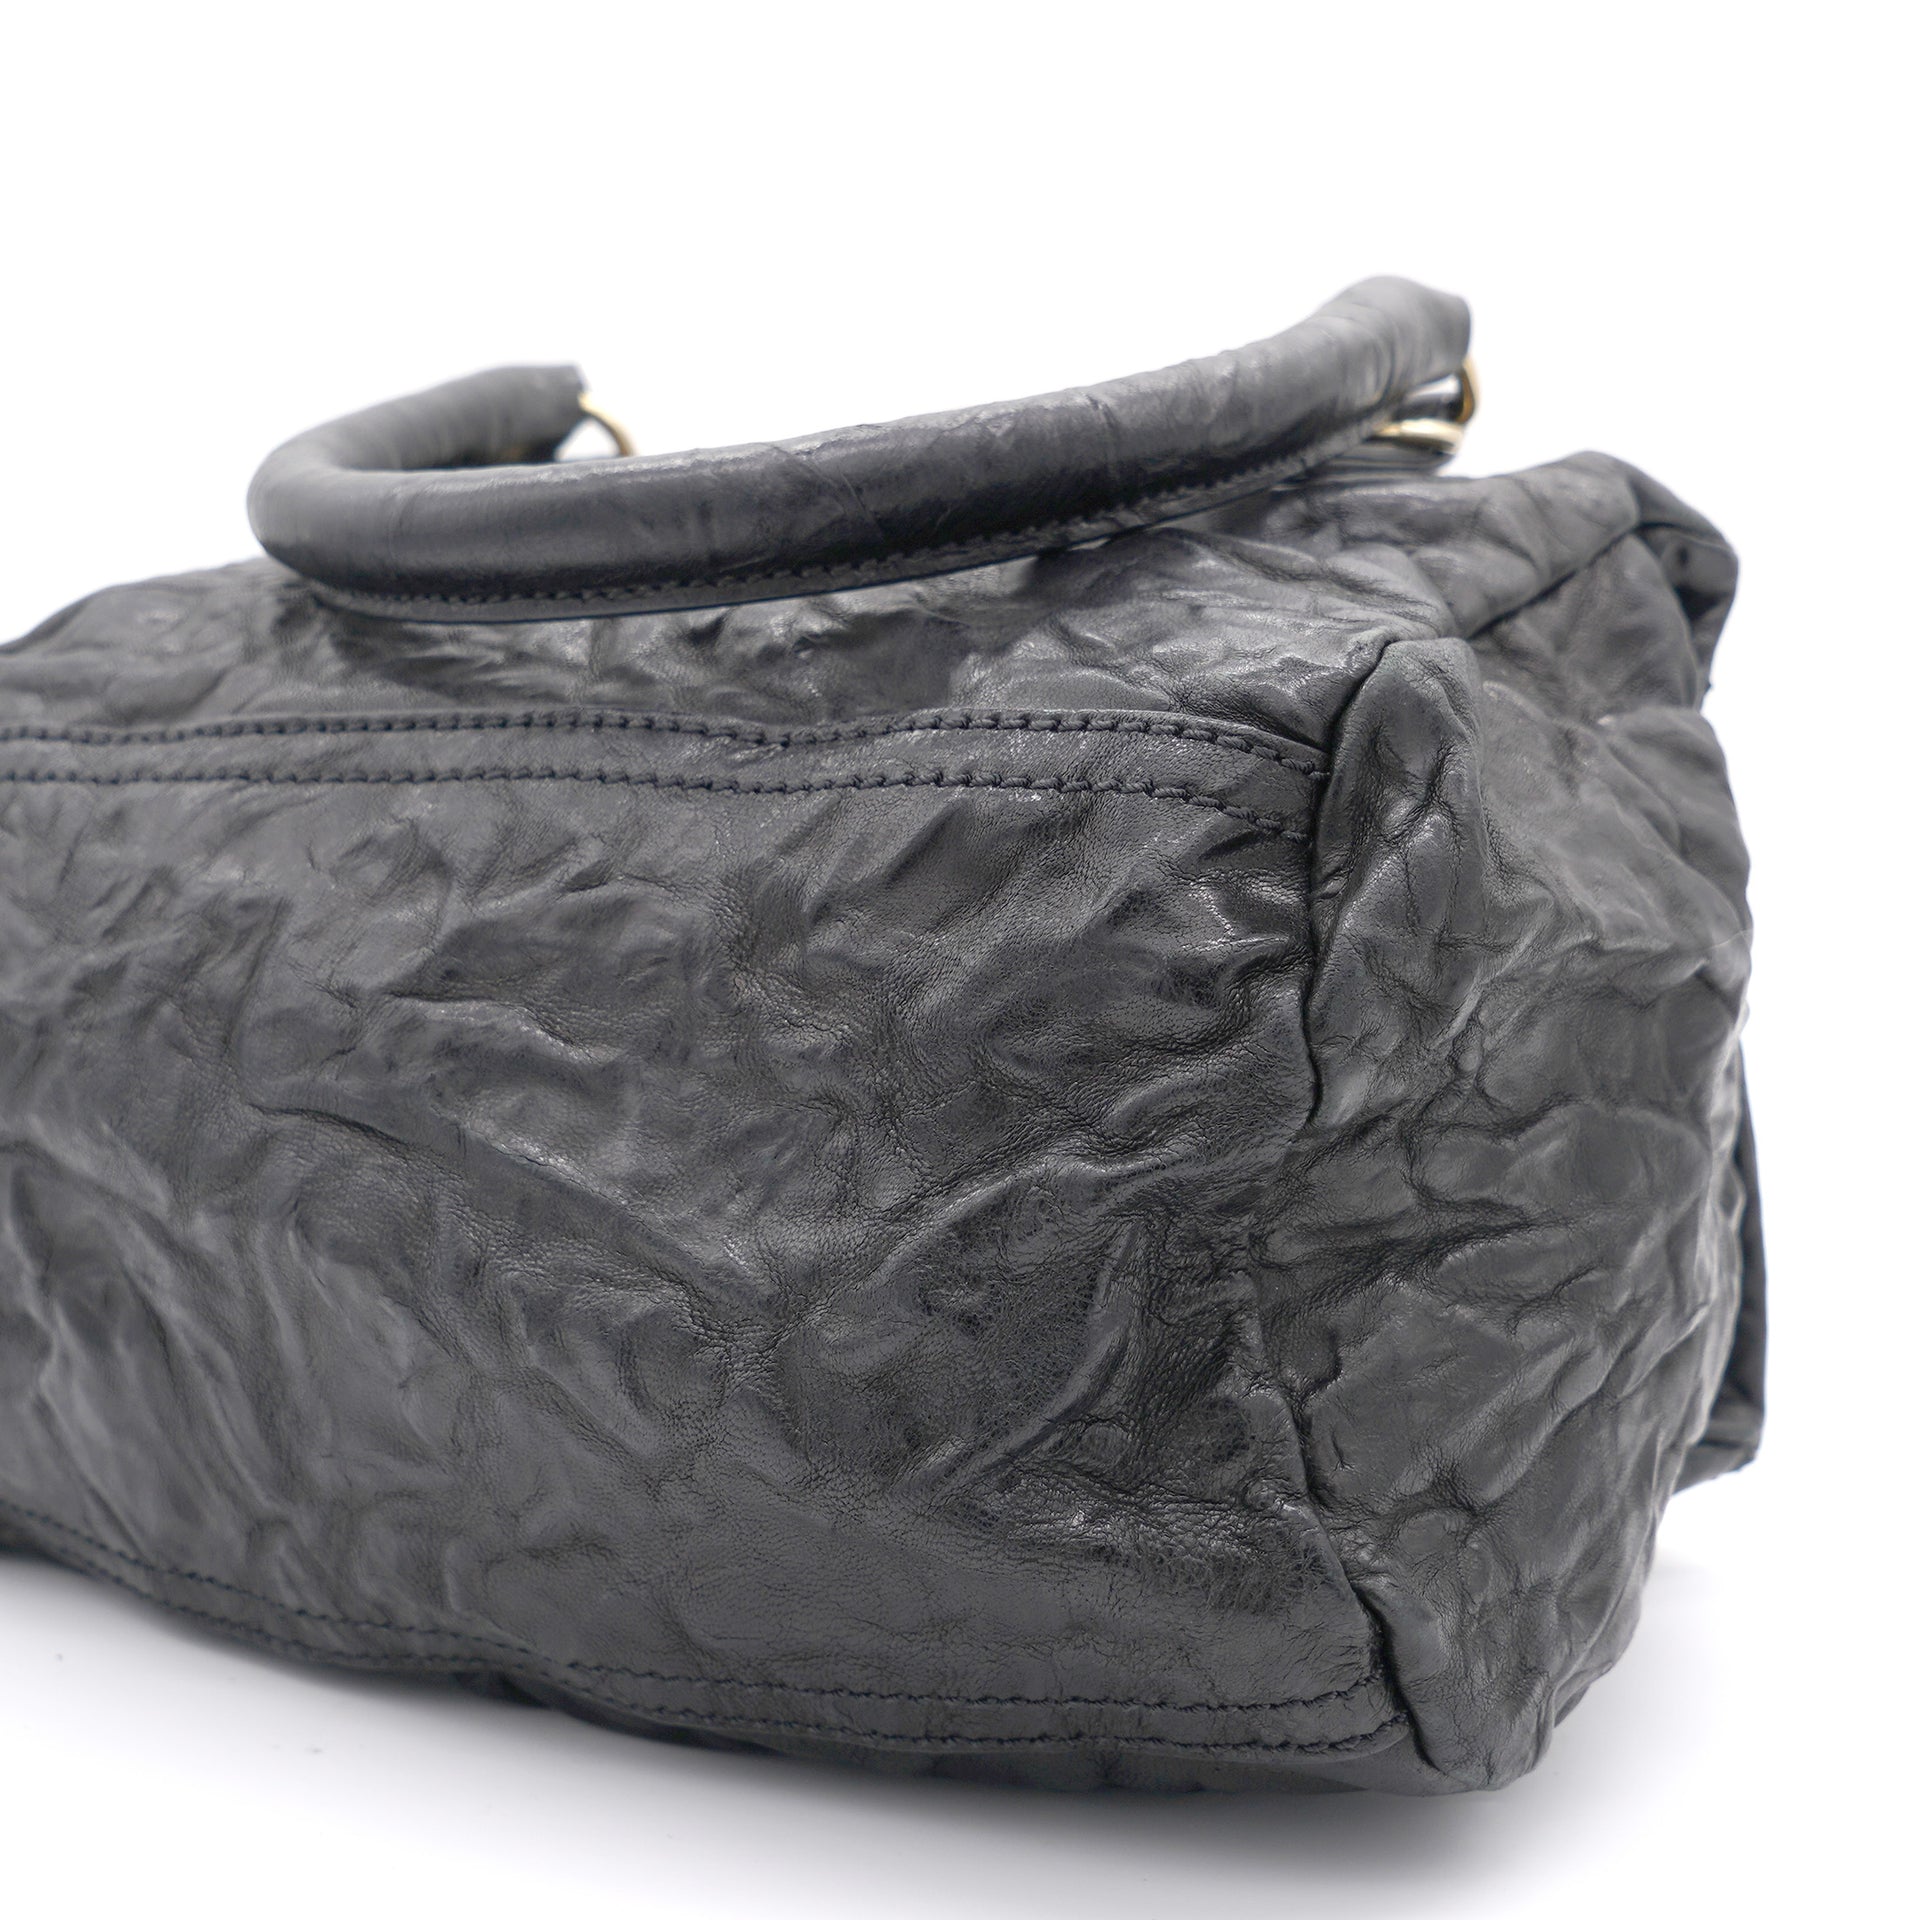 Black Leather Small Pandora Shoulder Bag